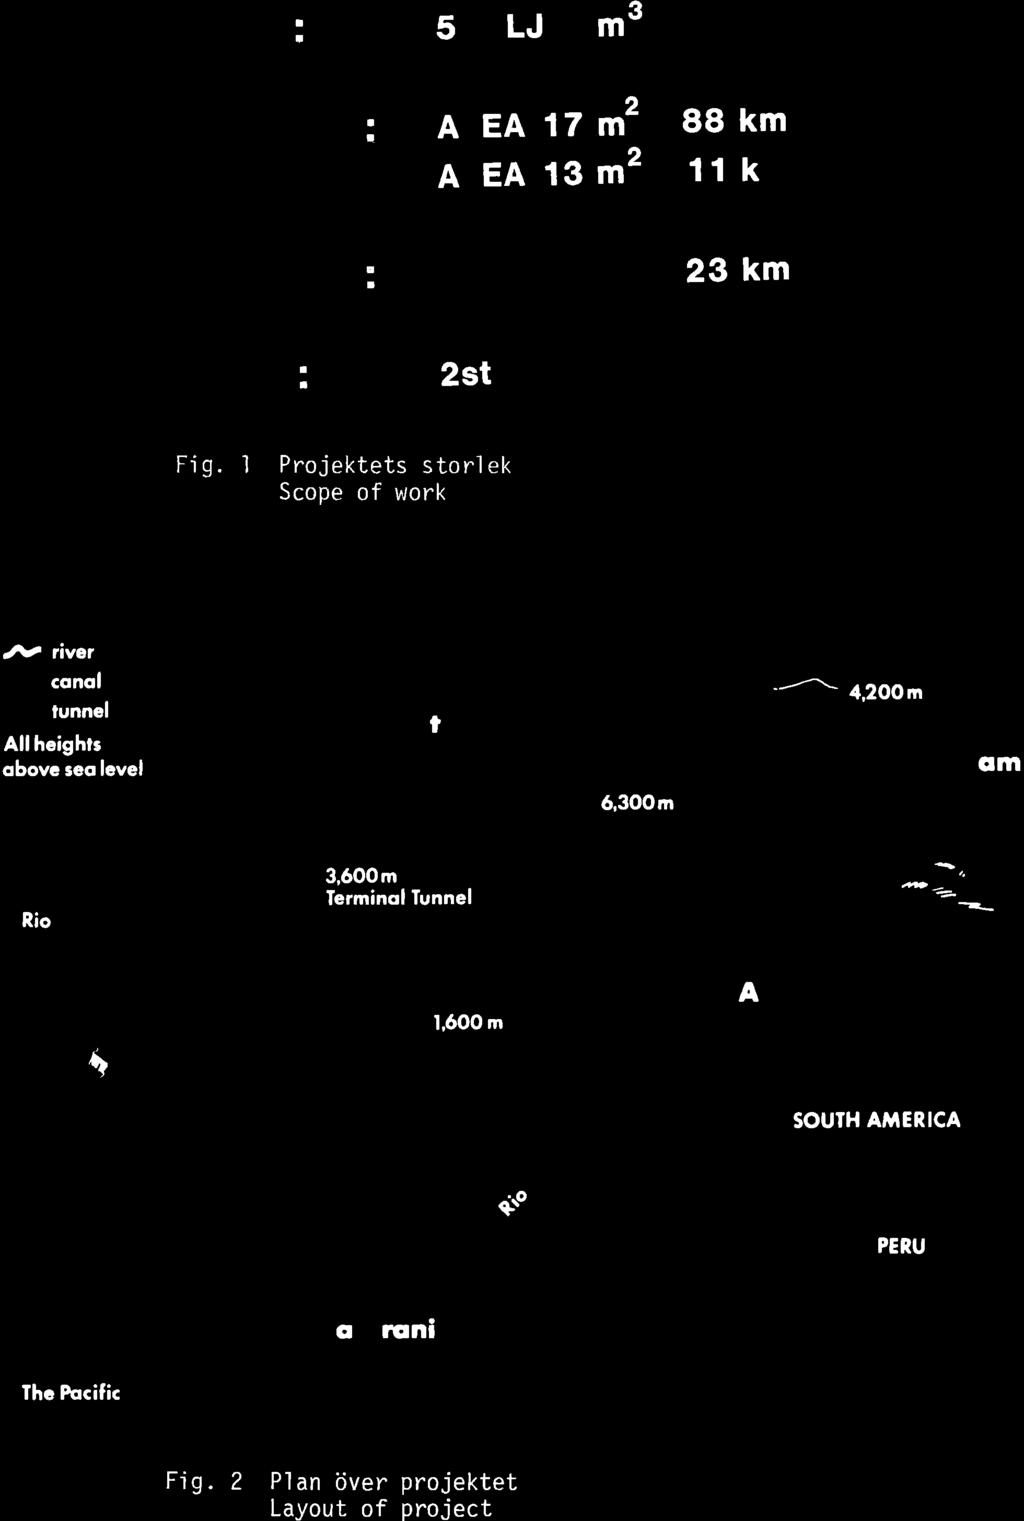 55 DAMM: TUNNLAR: KANALER: NTAG: 5 MLJ M AREA 17 M AREA 13 M 2st 3 2 2 88 km 11km 23 km Fjg. 1 Projektets storlek Scope of work JY ive r consl r r lunngl Allhcighr qbovc eo lcvel luti.